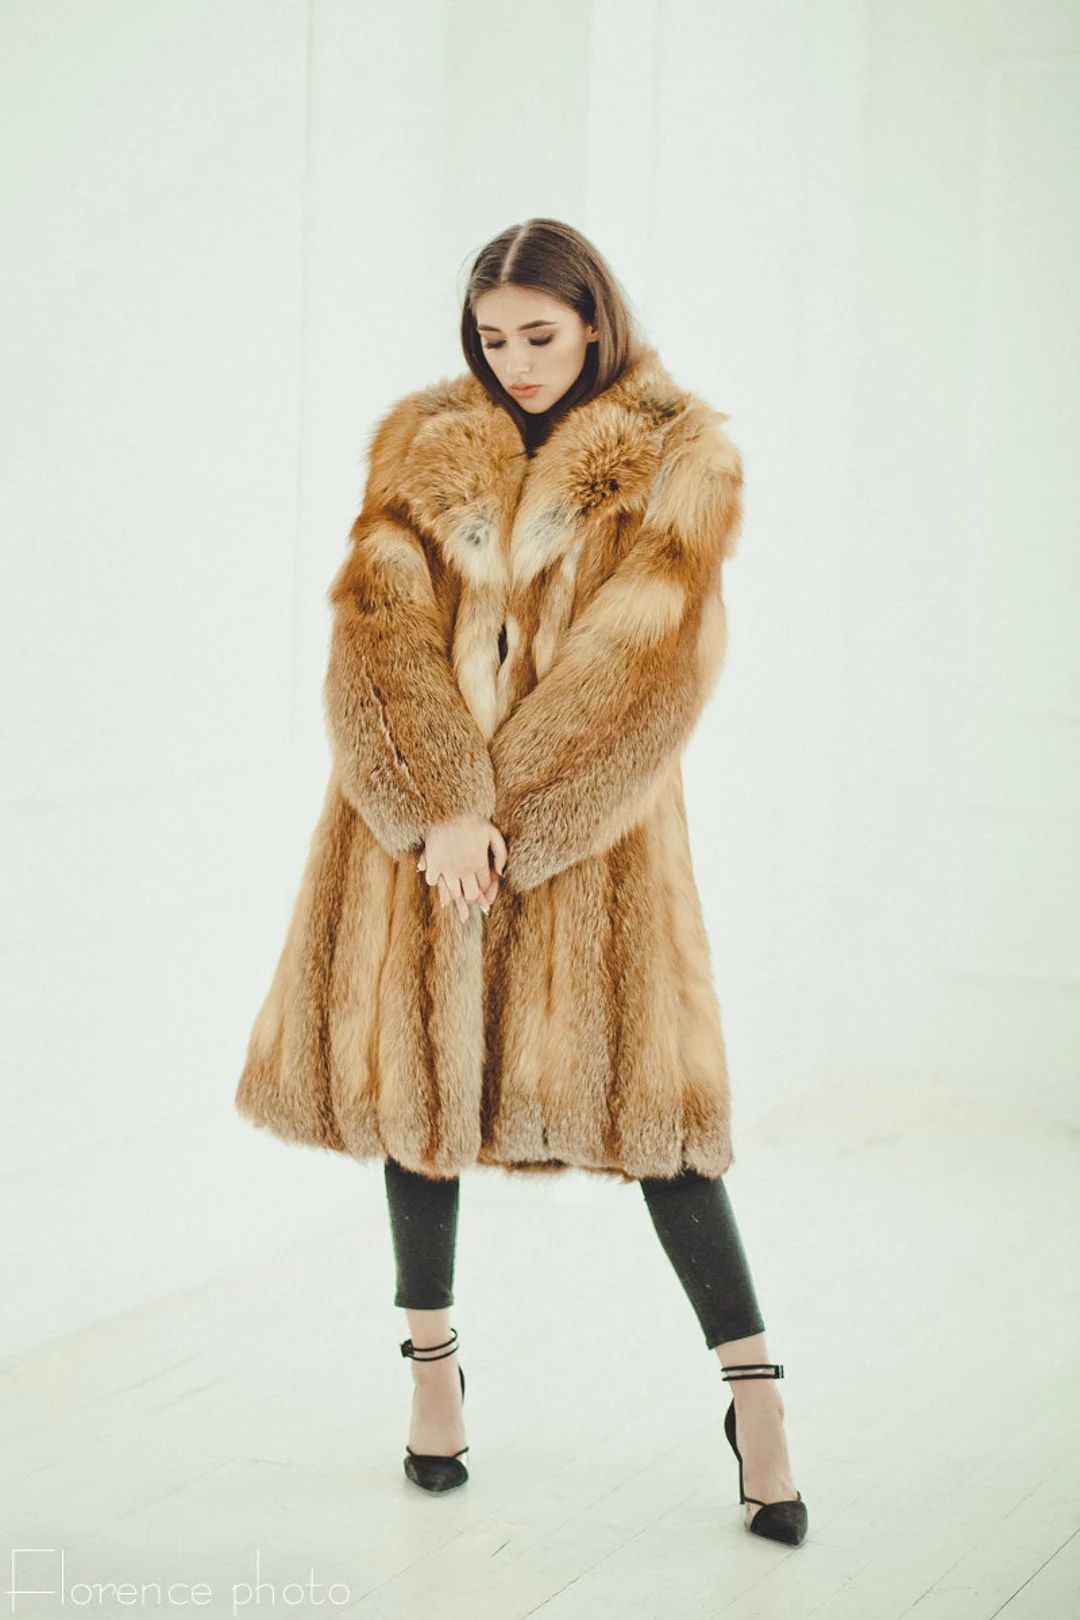 Fox Fur Coat -  Women's Long Winter Coats  - Oversized Fur Jacket - Luxury Gift for Wife | Etsy (US)